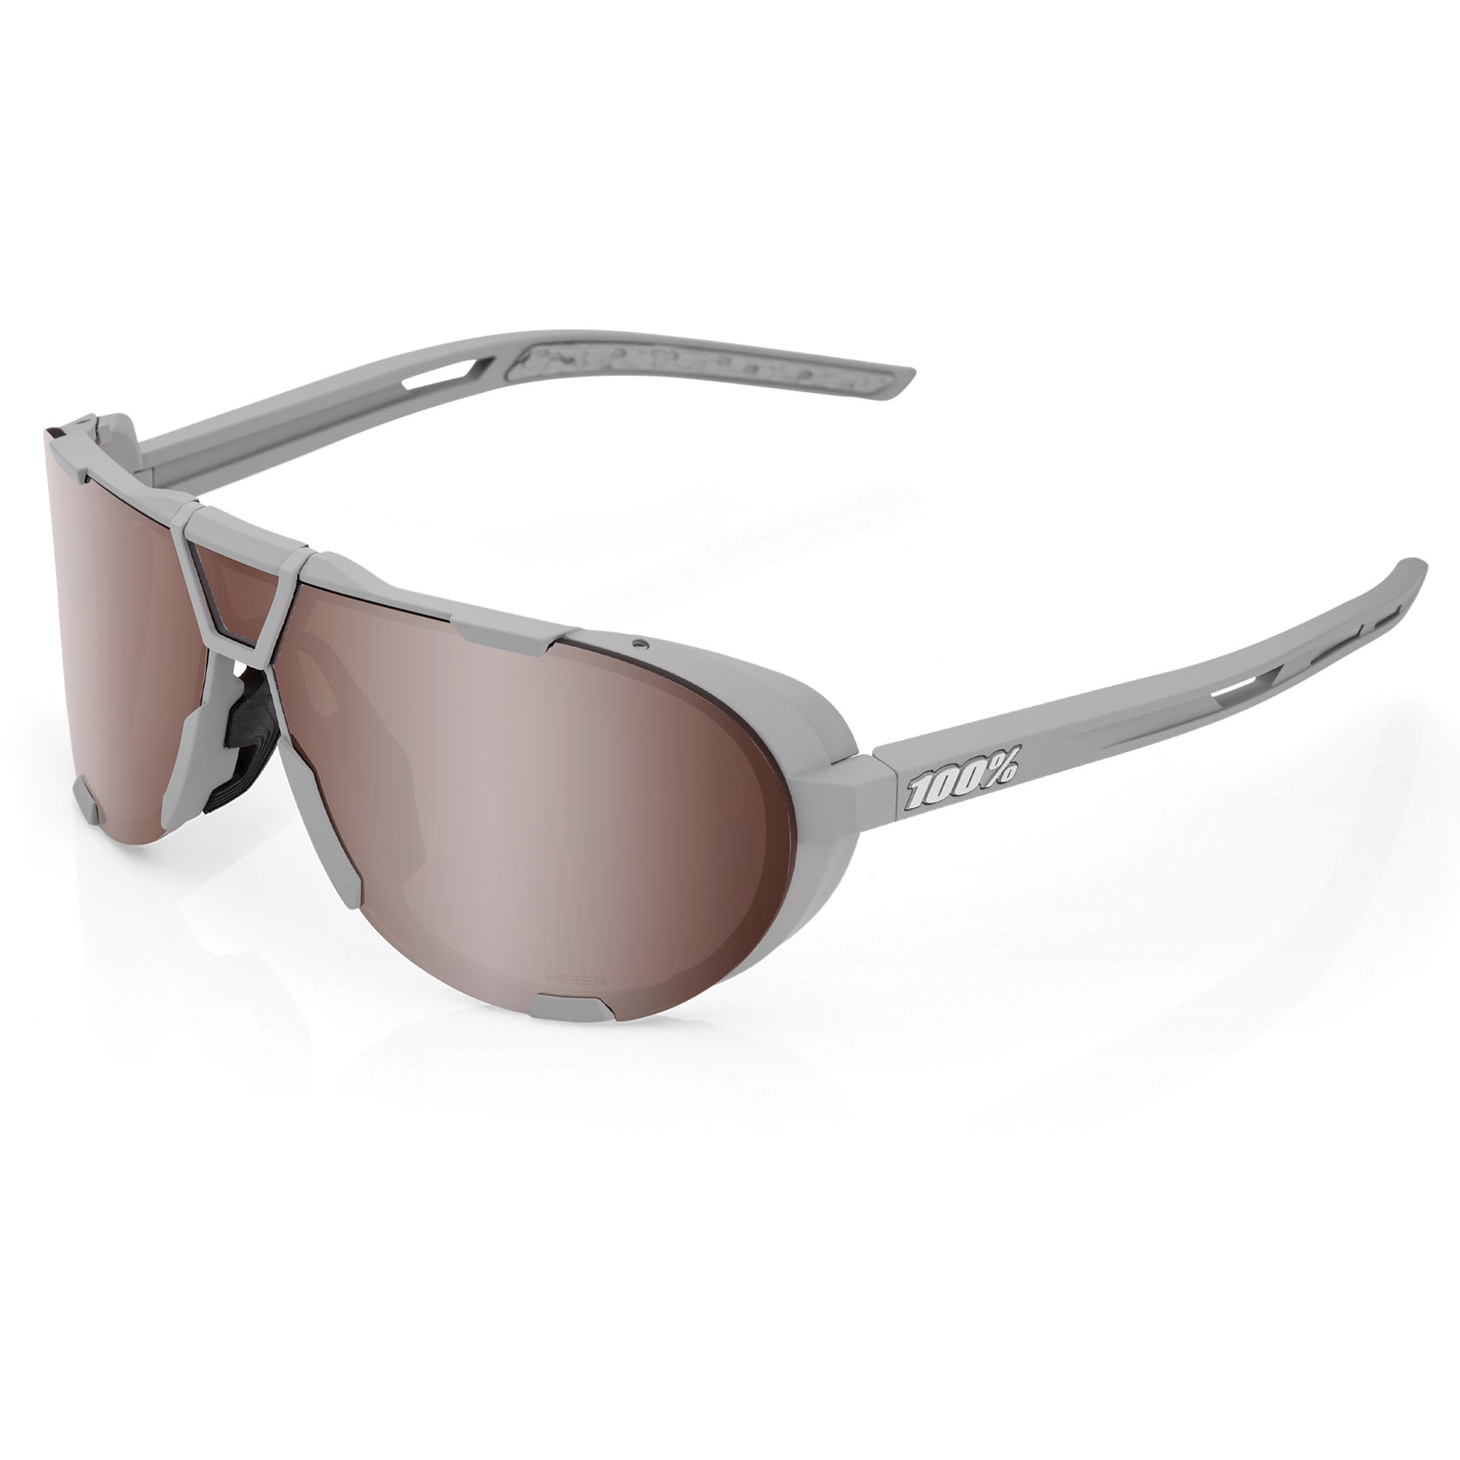 Produktbild von 100% Westcraft Brille - HiPER Mirror Lens - Soft Tact Cool Grey / Crimson Silver